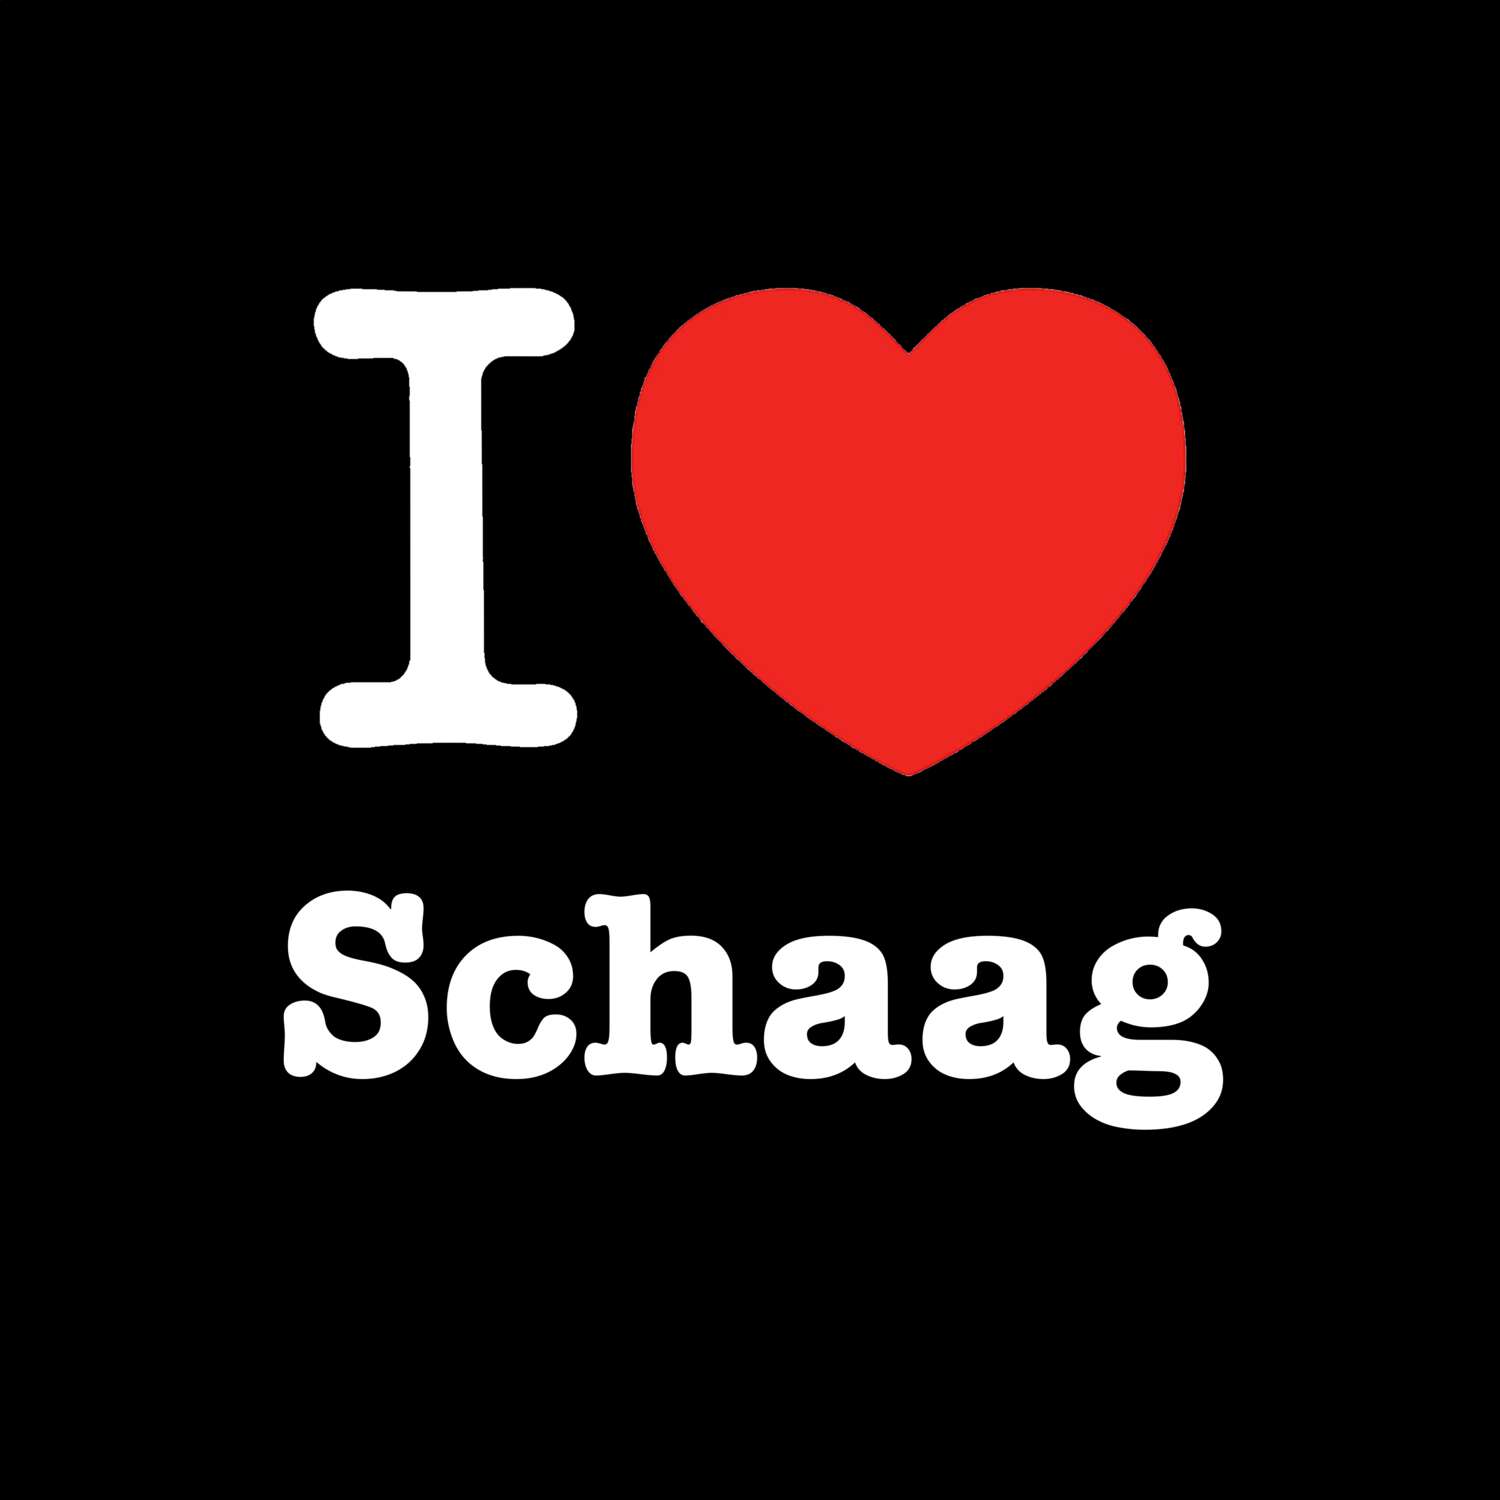 Schaag T-Shirt »I love«